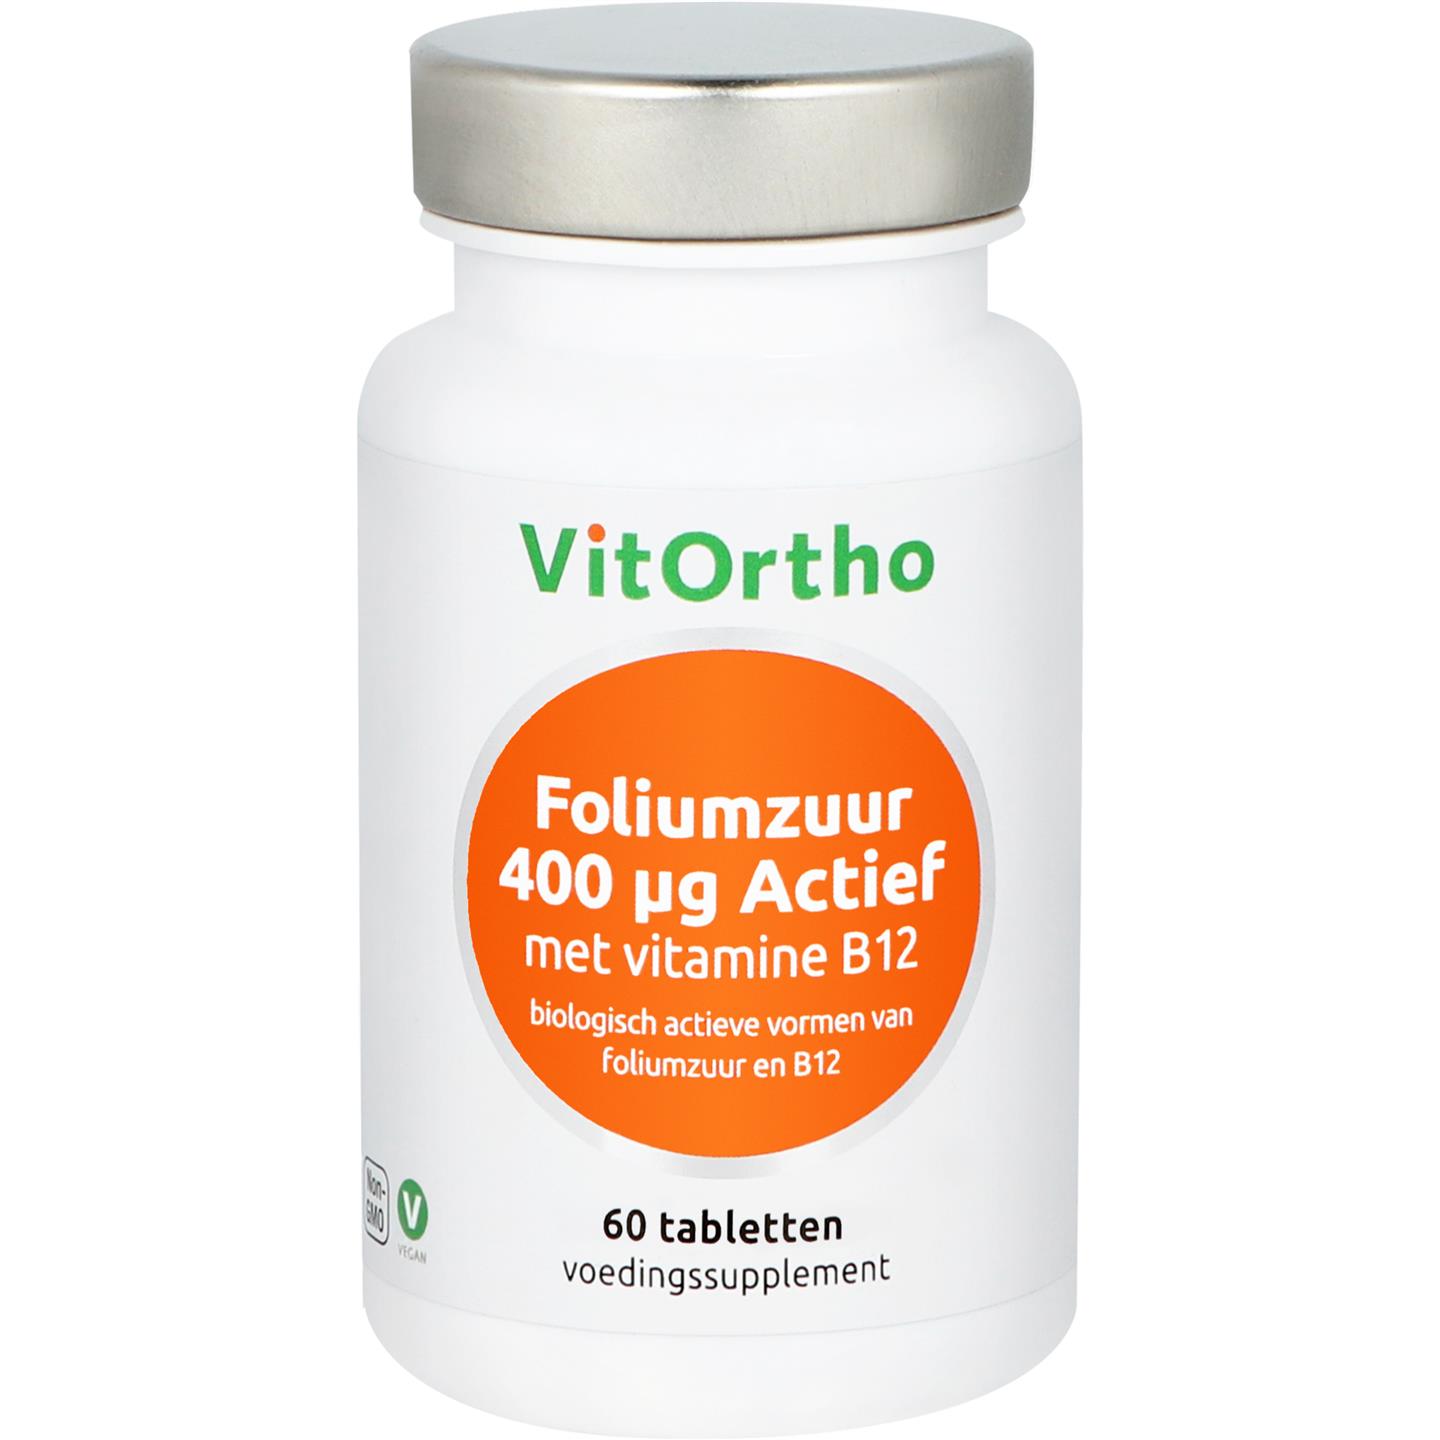 Foliumzuur 400 mcg Actief met vitamine B12